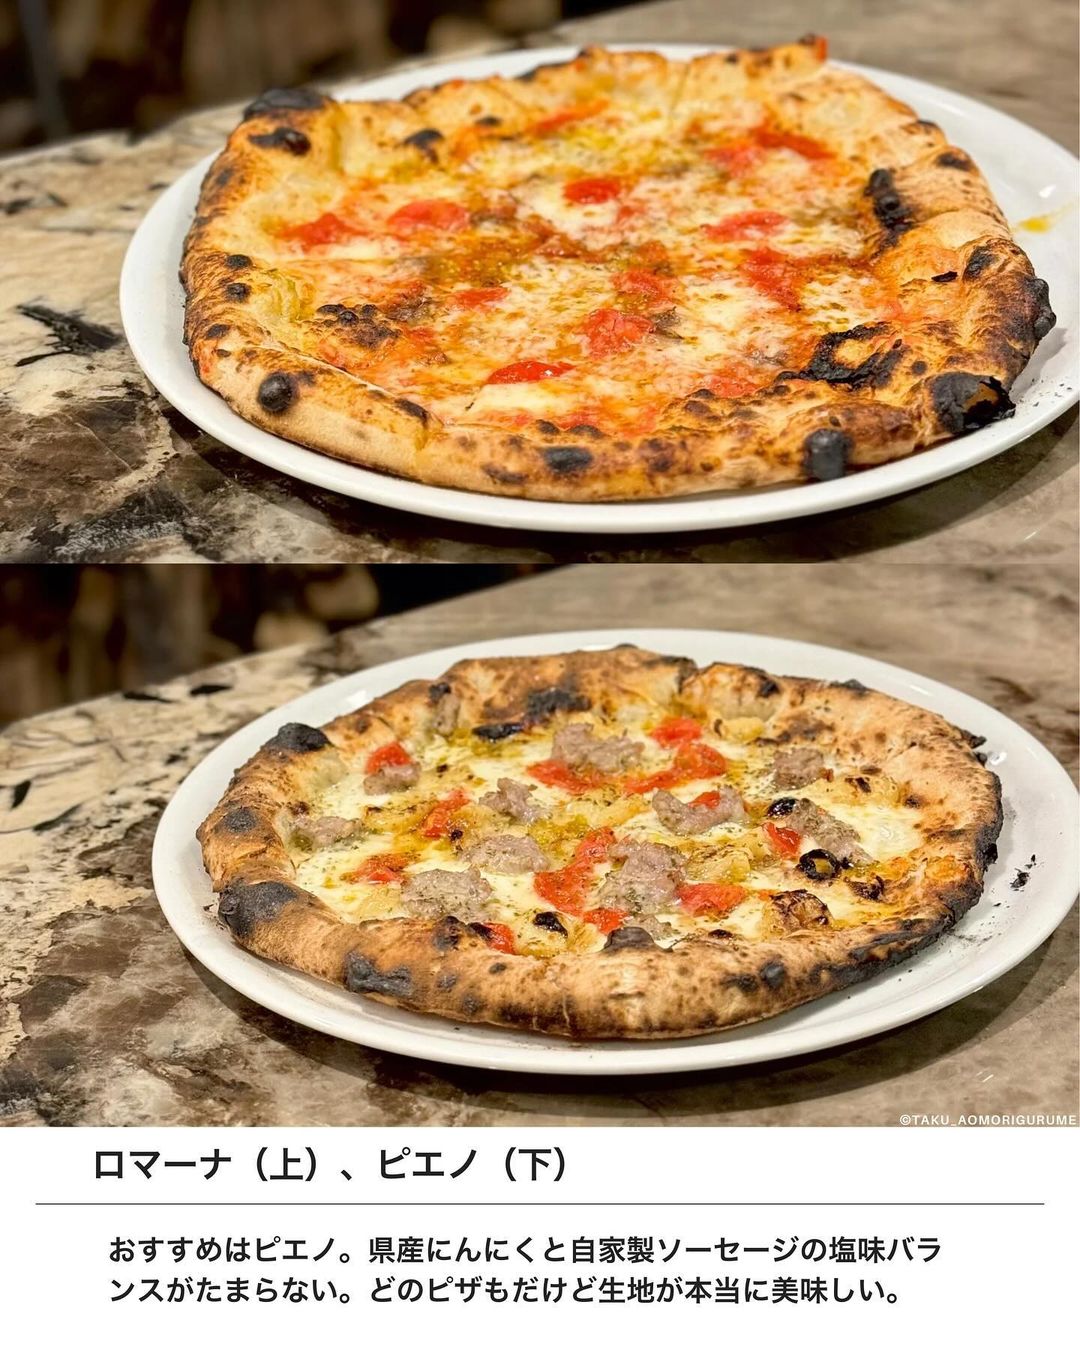 【弘前市・pizzeria pieno】ロマーナとピエノ